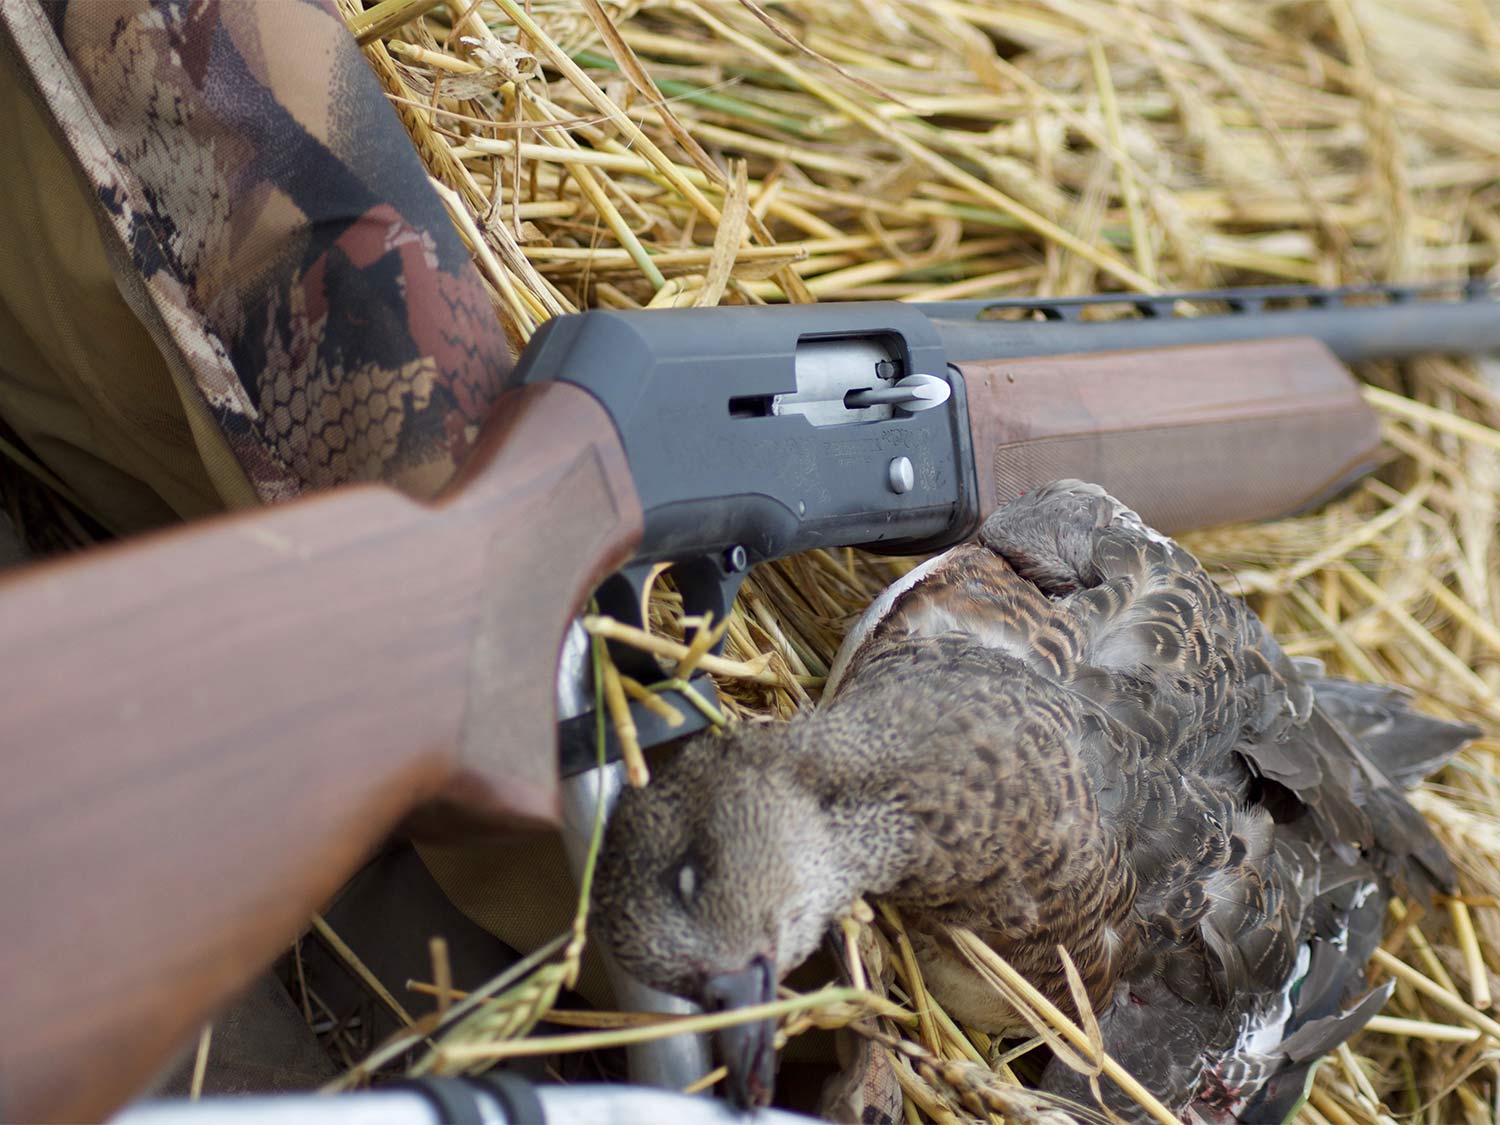 A Beretta shotgun next to a silver mallard duck.